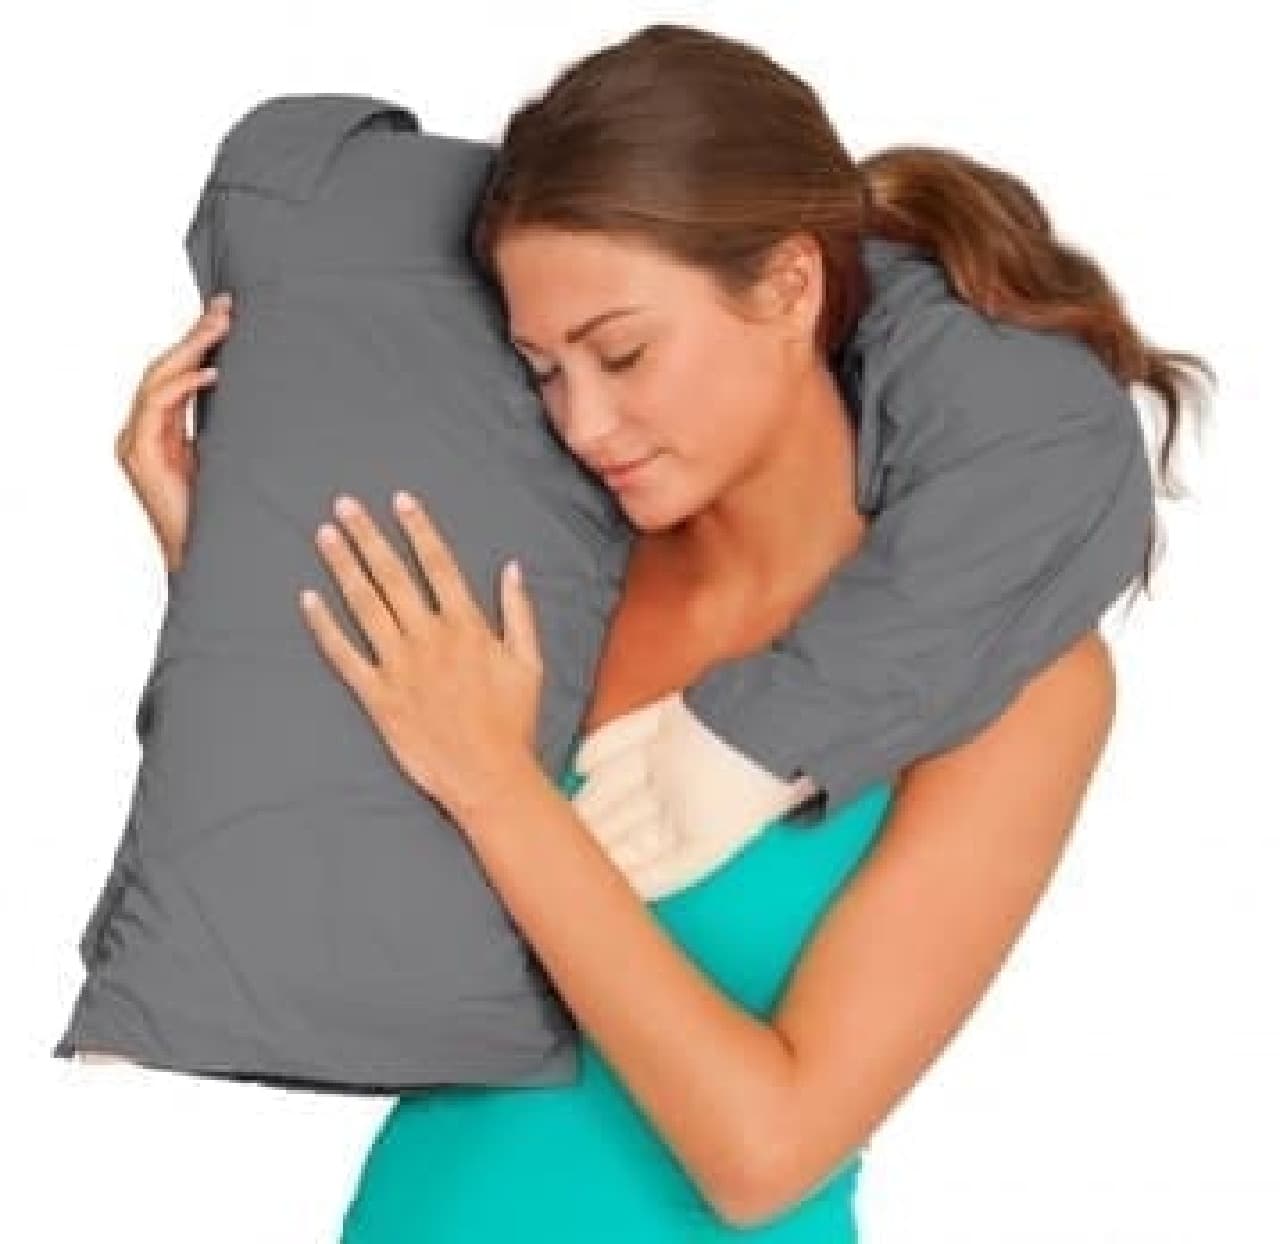 Dakimakura "Boyfriend Pillow" like an arm pillow